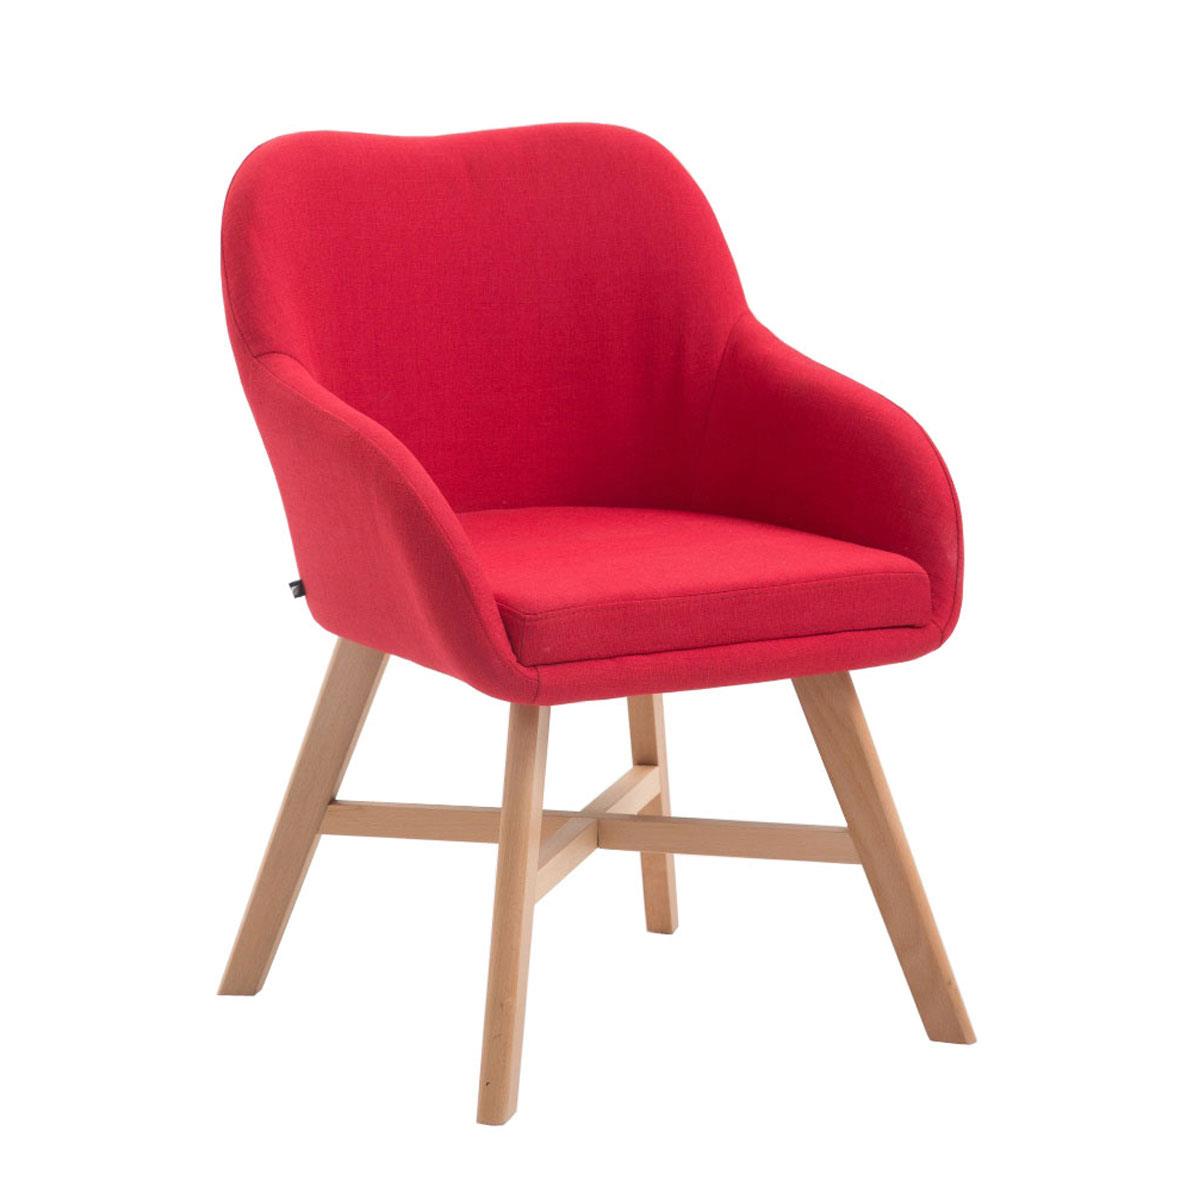 Cadeira de Visita KETEL, Exclusiva, Estructura em Madeira Clara e Tecido, Em Vermelho